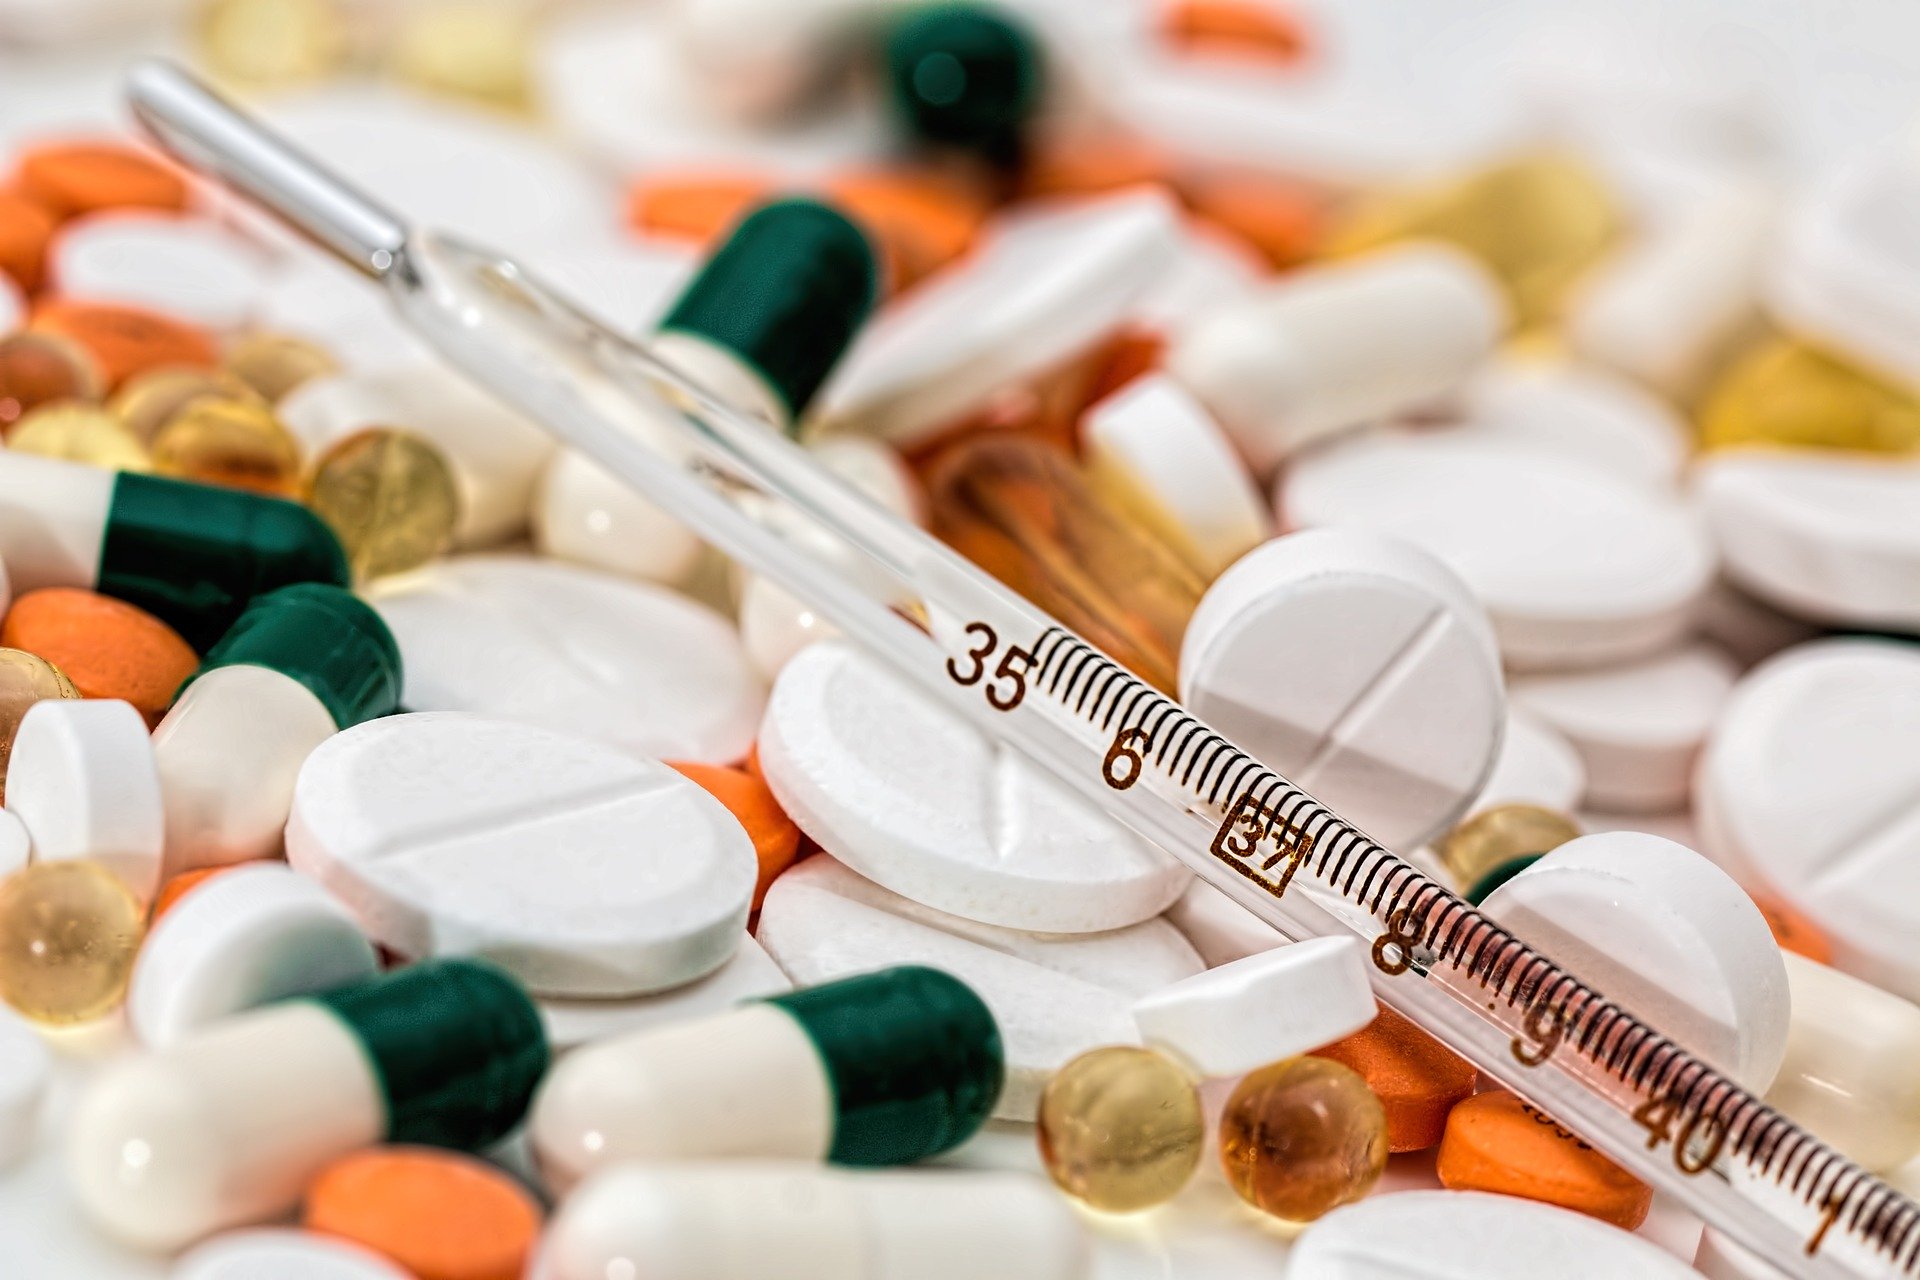 O Grupo Biotoscana (GBT) produz medicamentos para o tratamento de diversos problemas de saúde / Pixabay